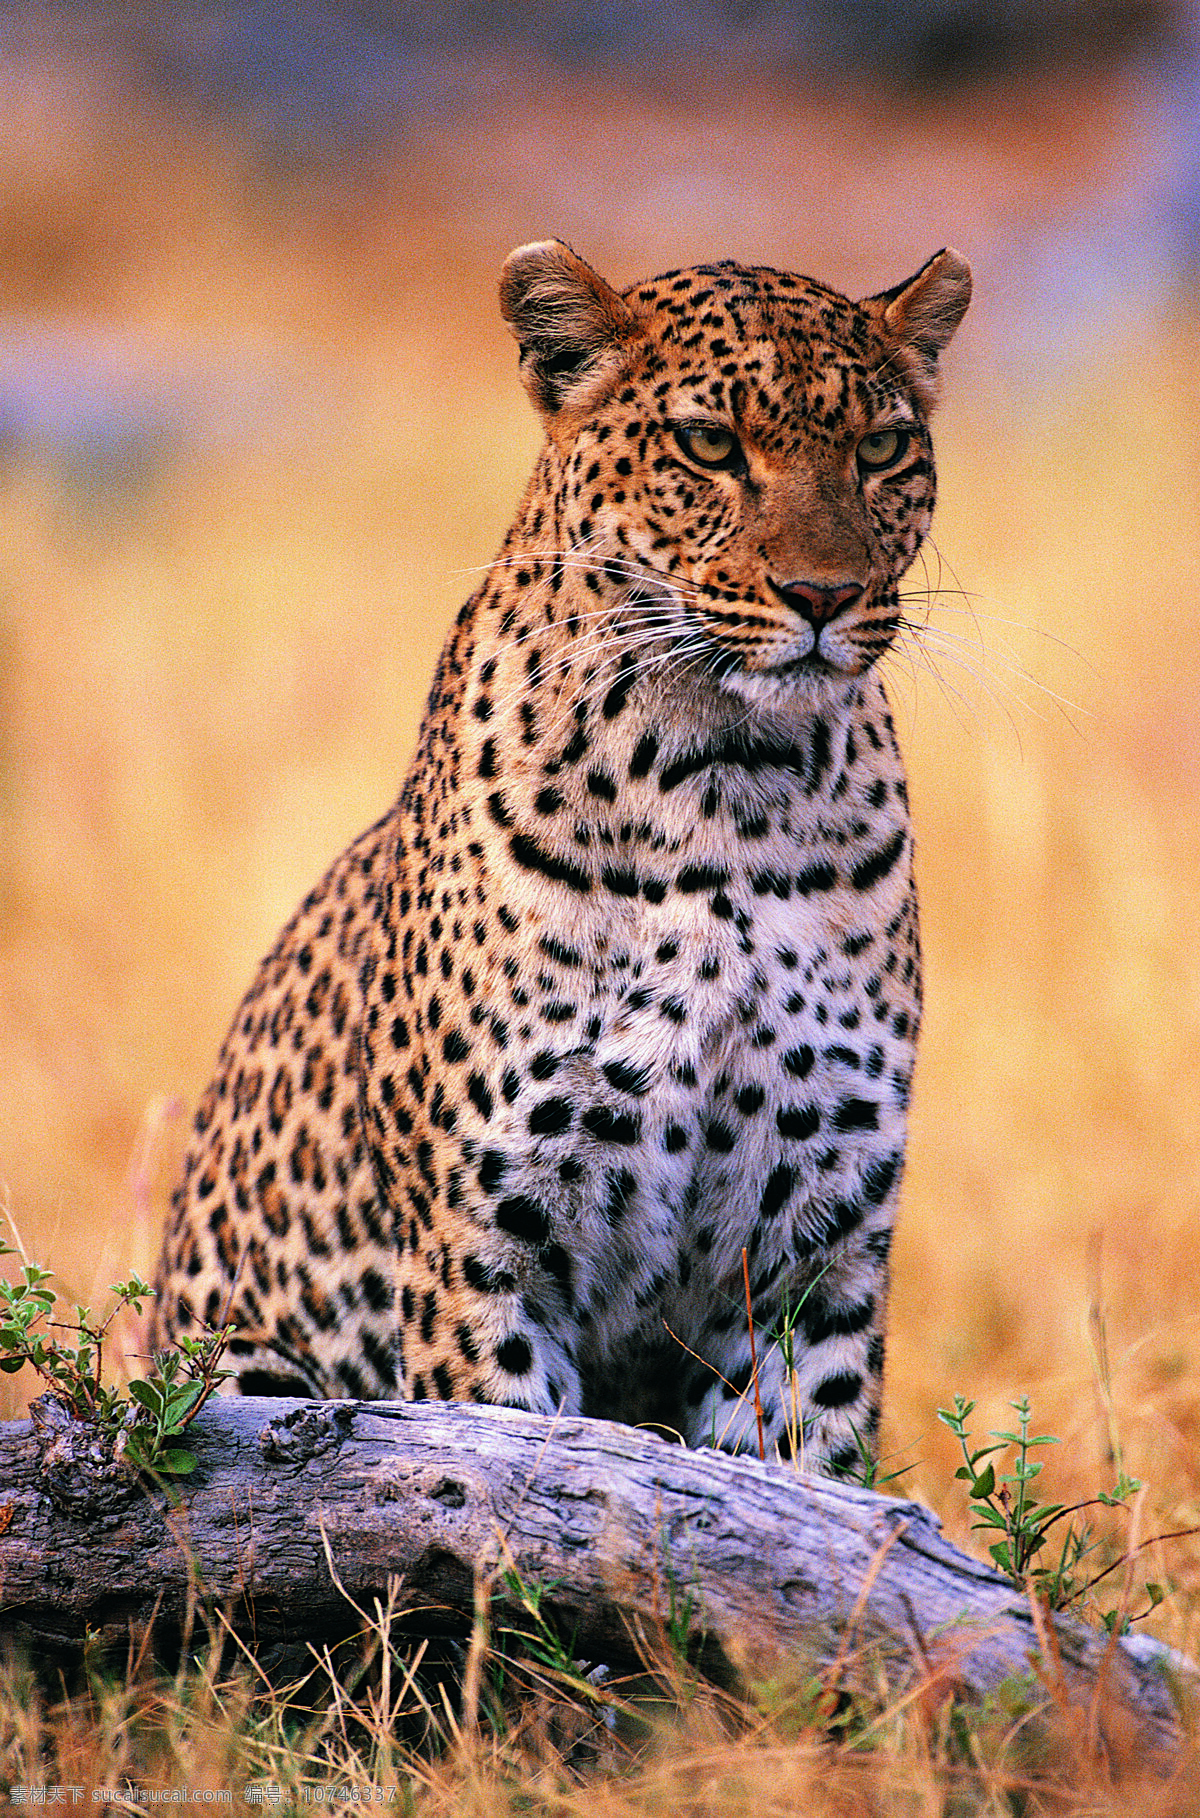 草原上的猎豹 野生动物 动物世界 猎豹 豹子 金钱豹 草原 摄影图 陆地动物 生物世界 黄色